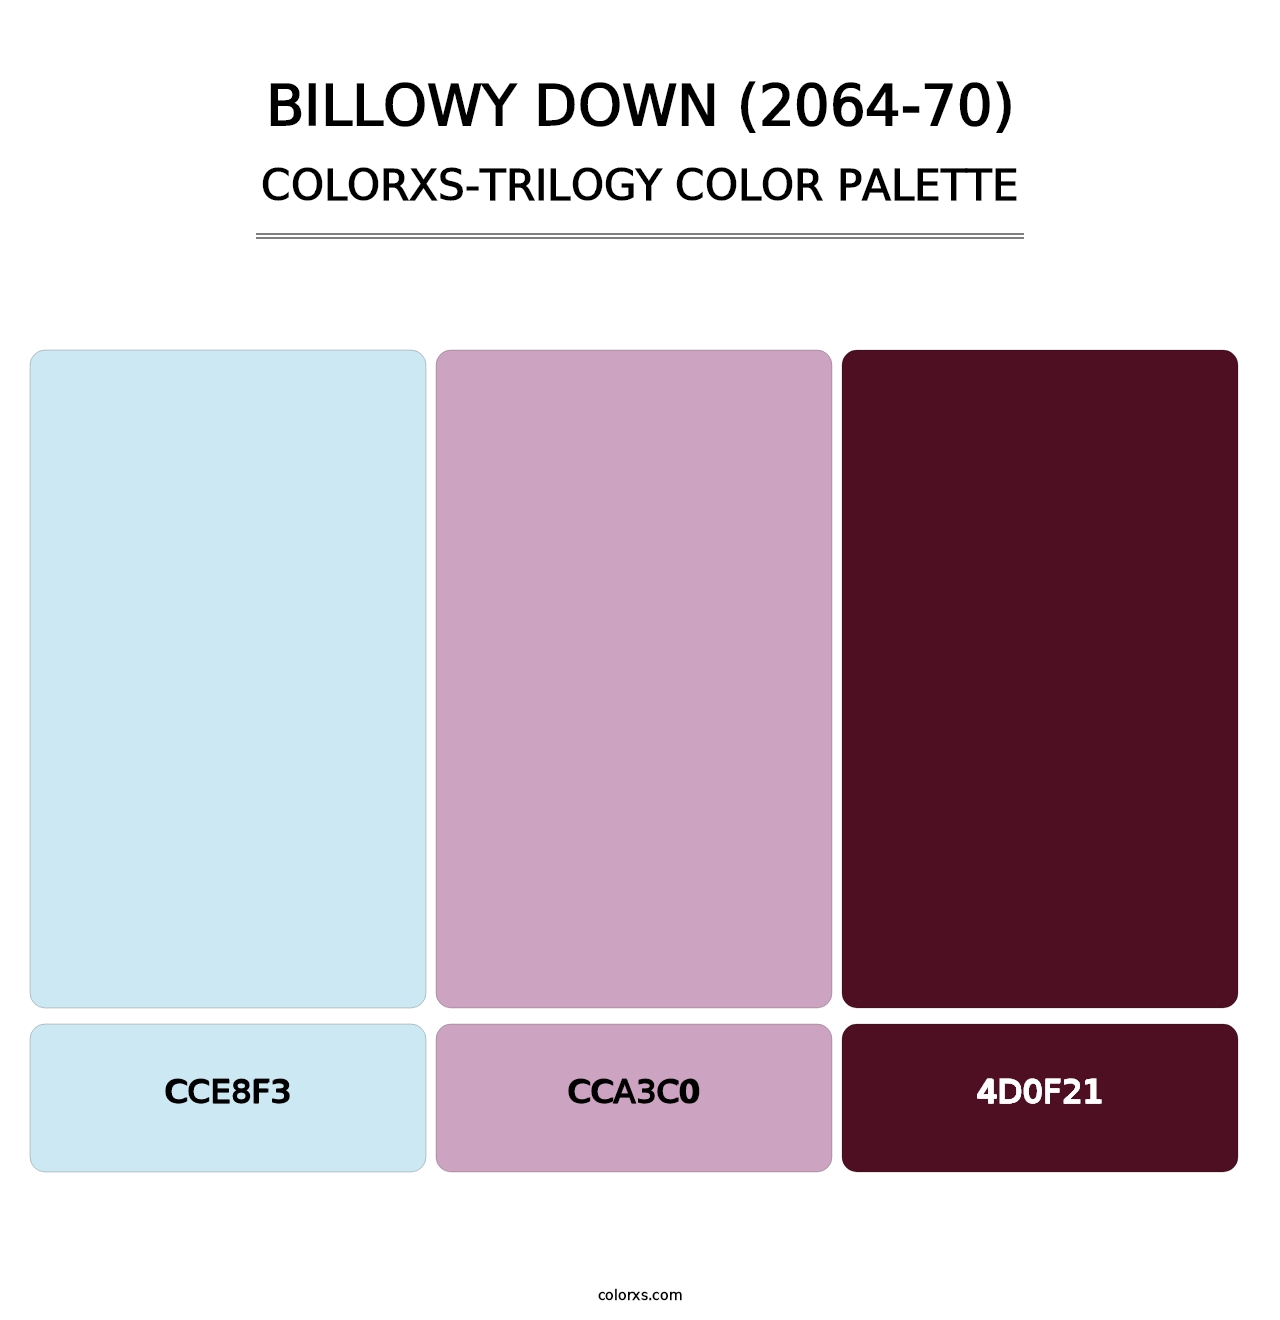 Billowy Down (2064-70) - Colorxs Trilogy Palette